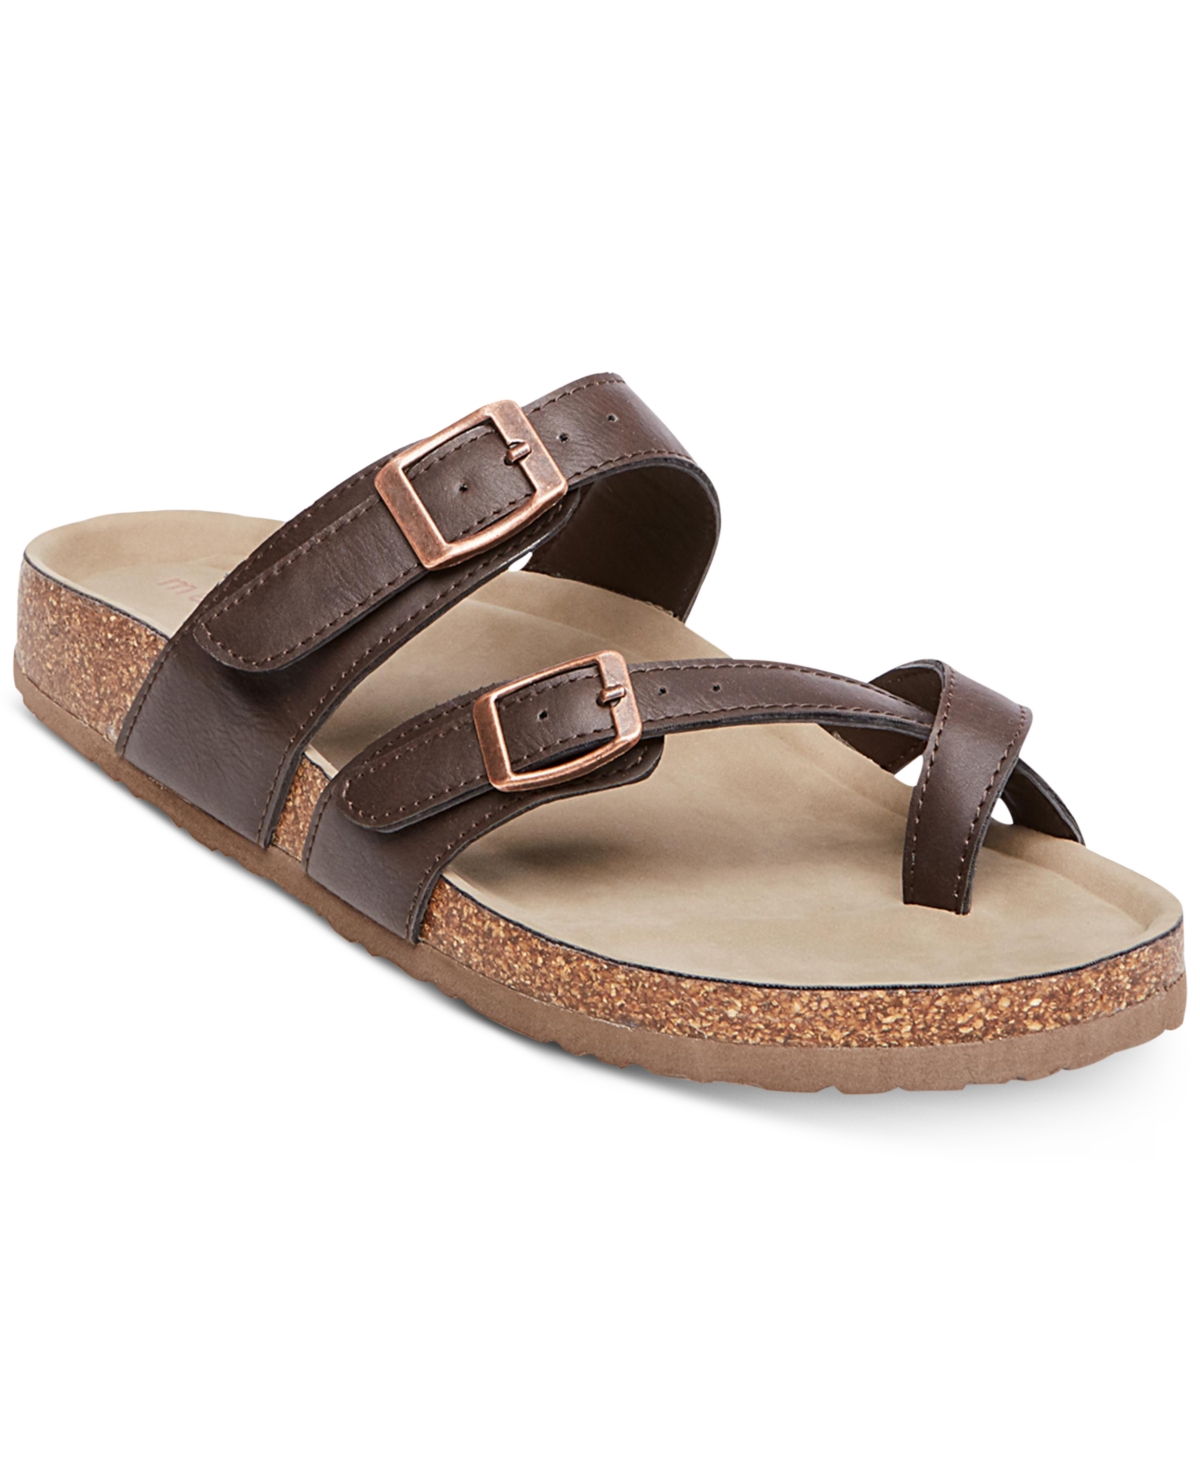 Bryceee Footbed Sandals - Dark Brown